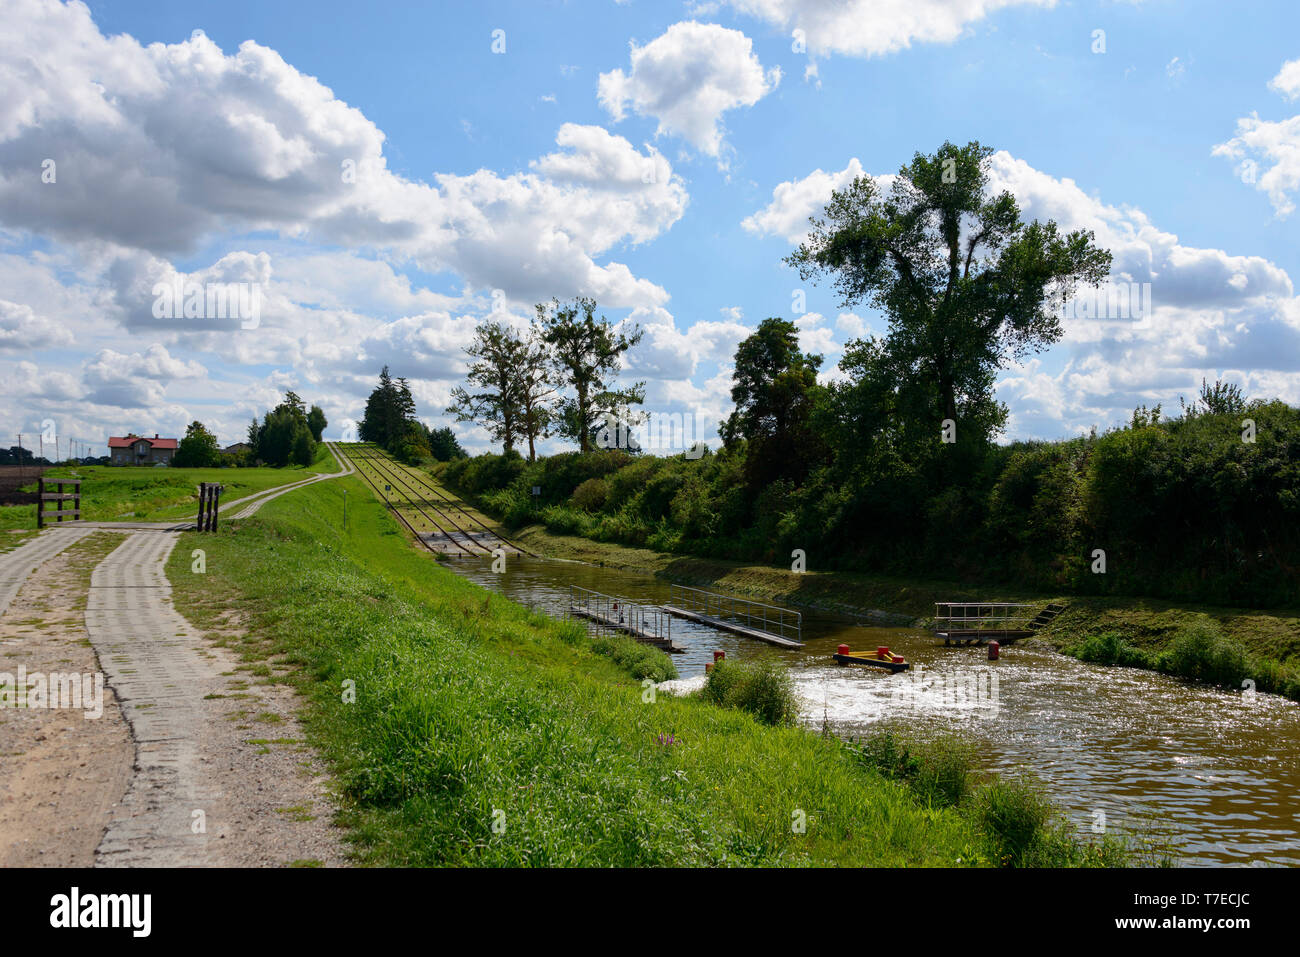 Jelenie, Elblag-Ostroda Canal, Warmia Masuria, Poland Stock Photo